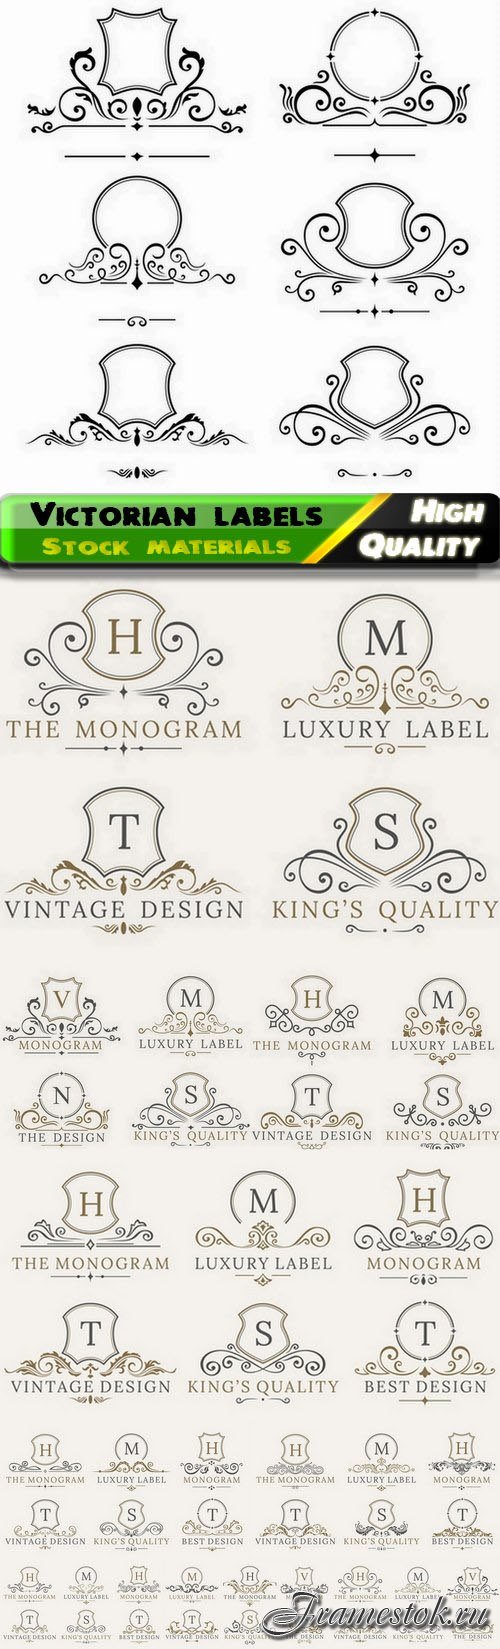 Monogram label victorian frame for company emblem or logo 10 Eps